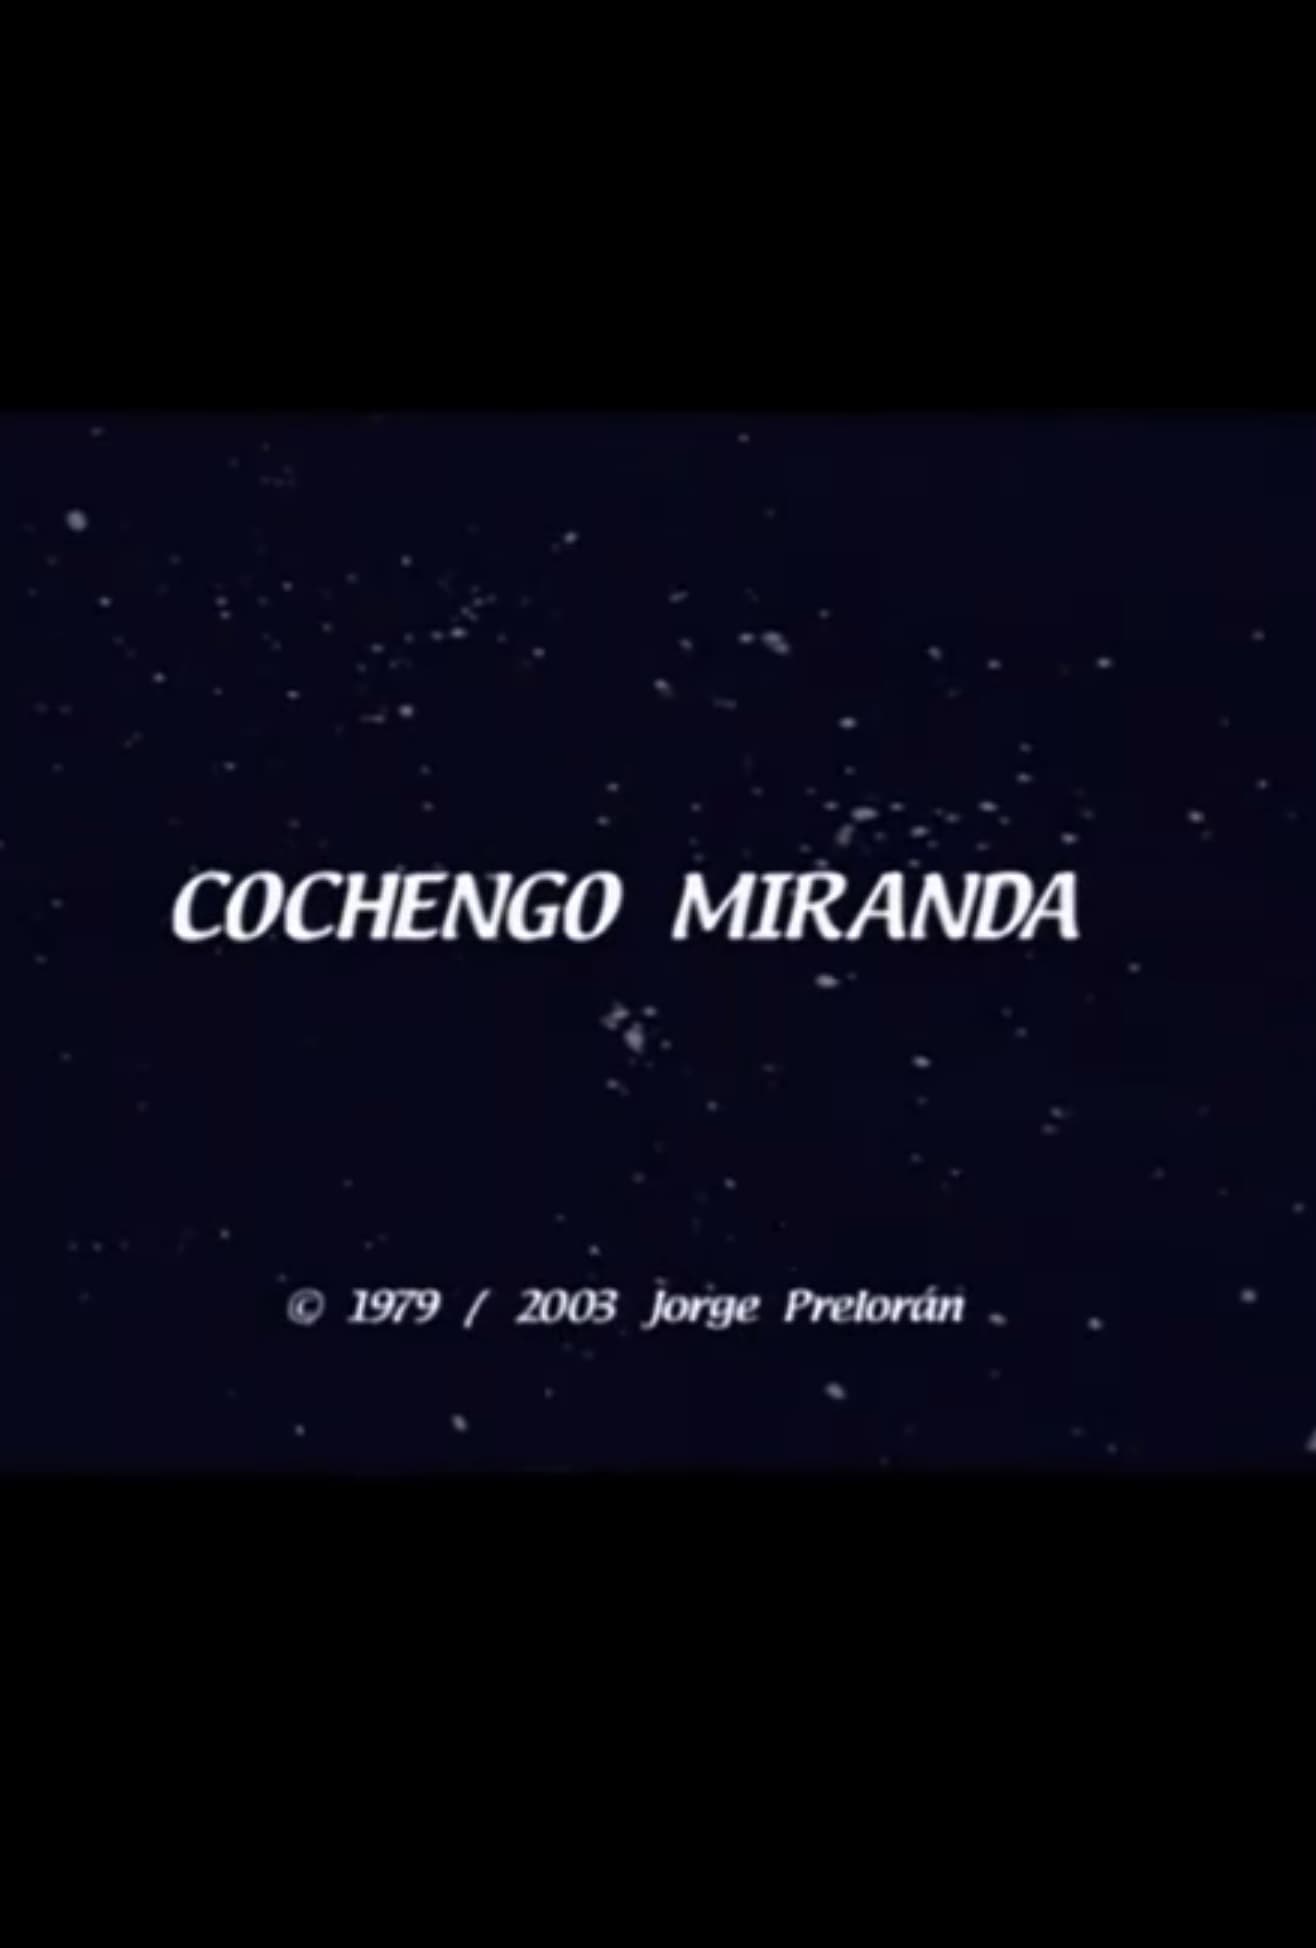 Cochengo Miranda